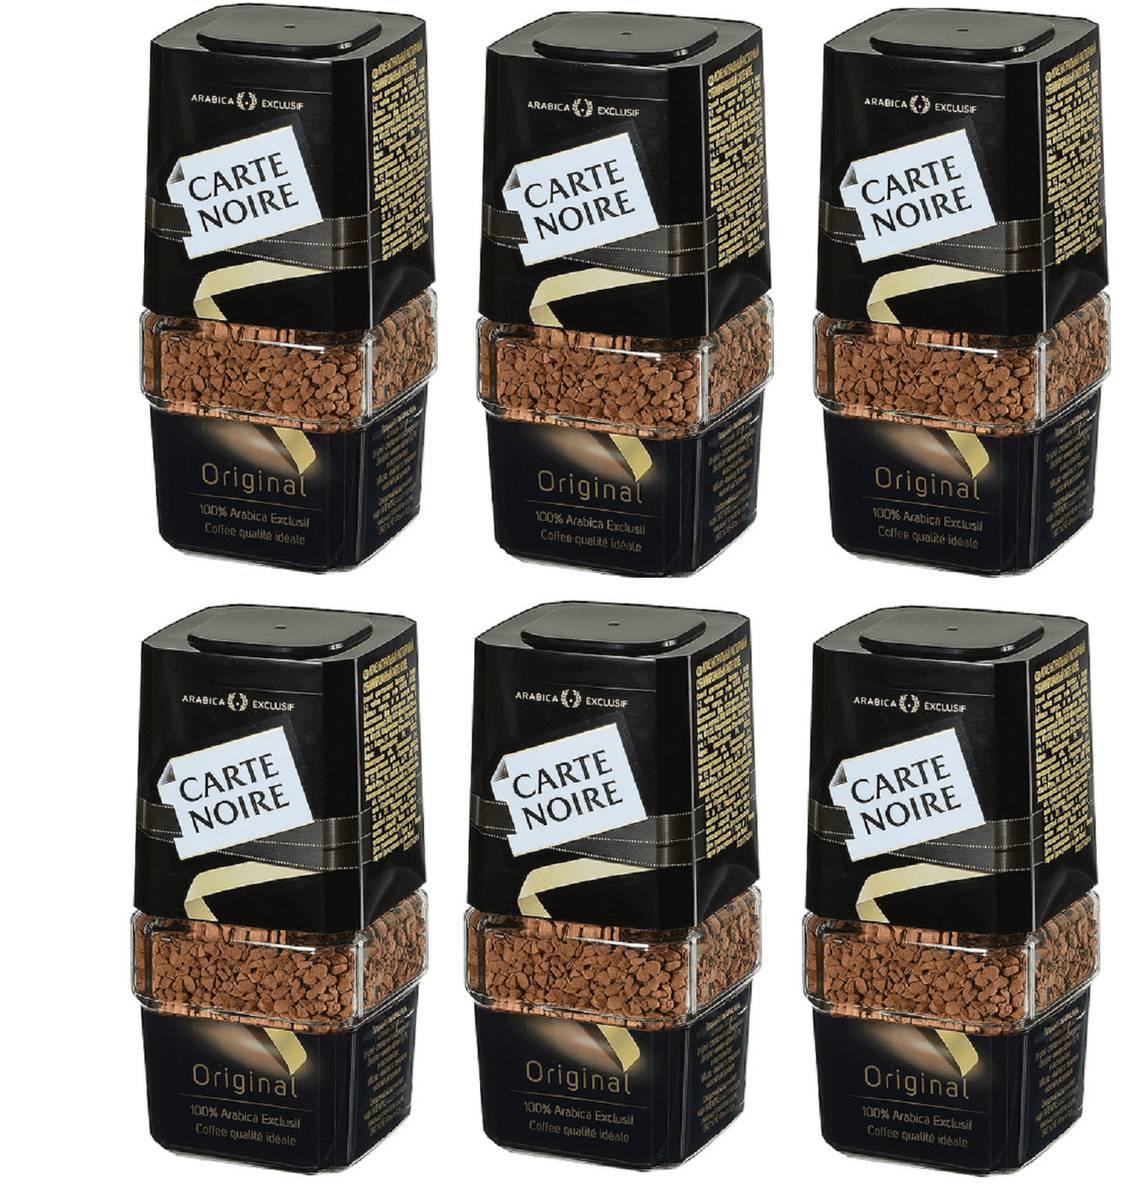 Основные различия между сортами кофе арабика и робуста